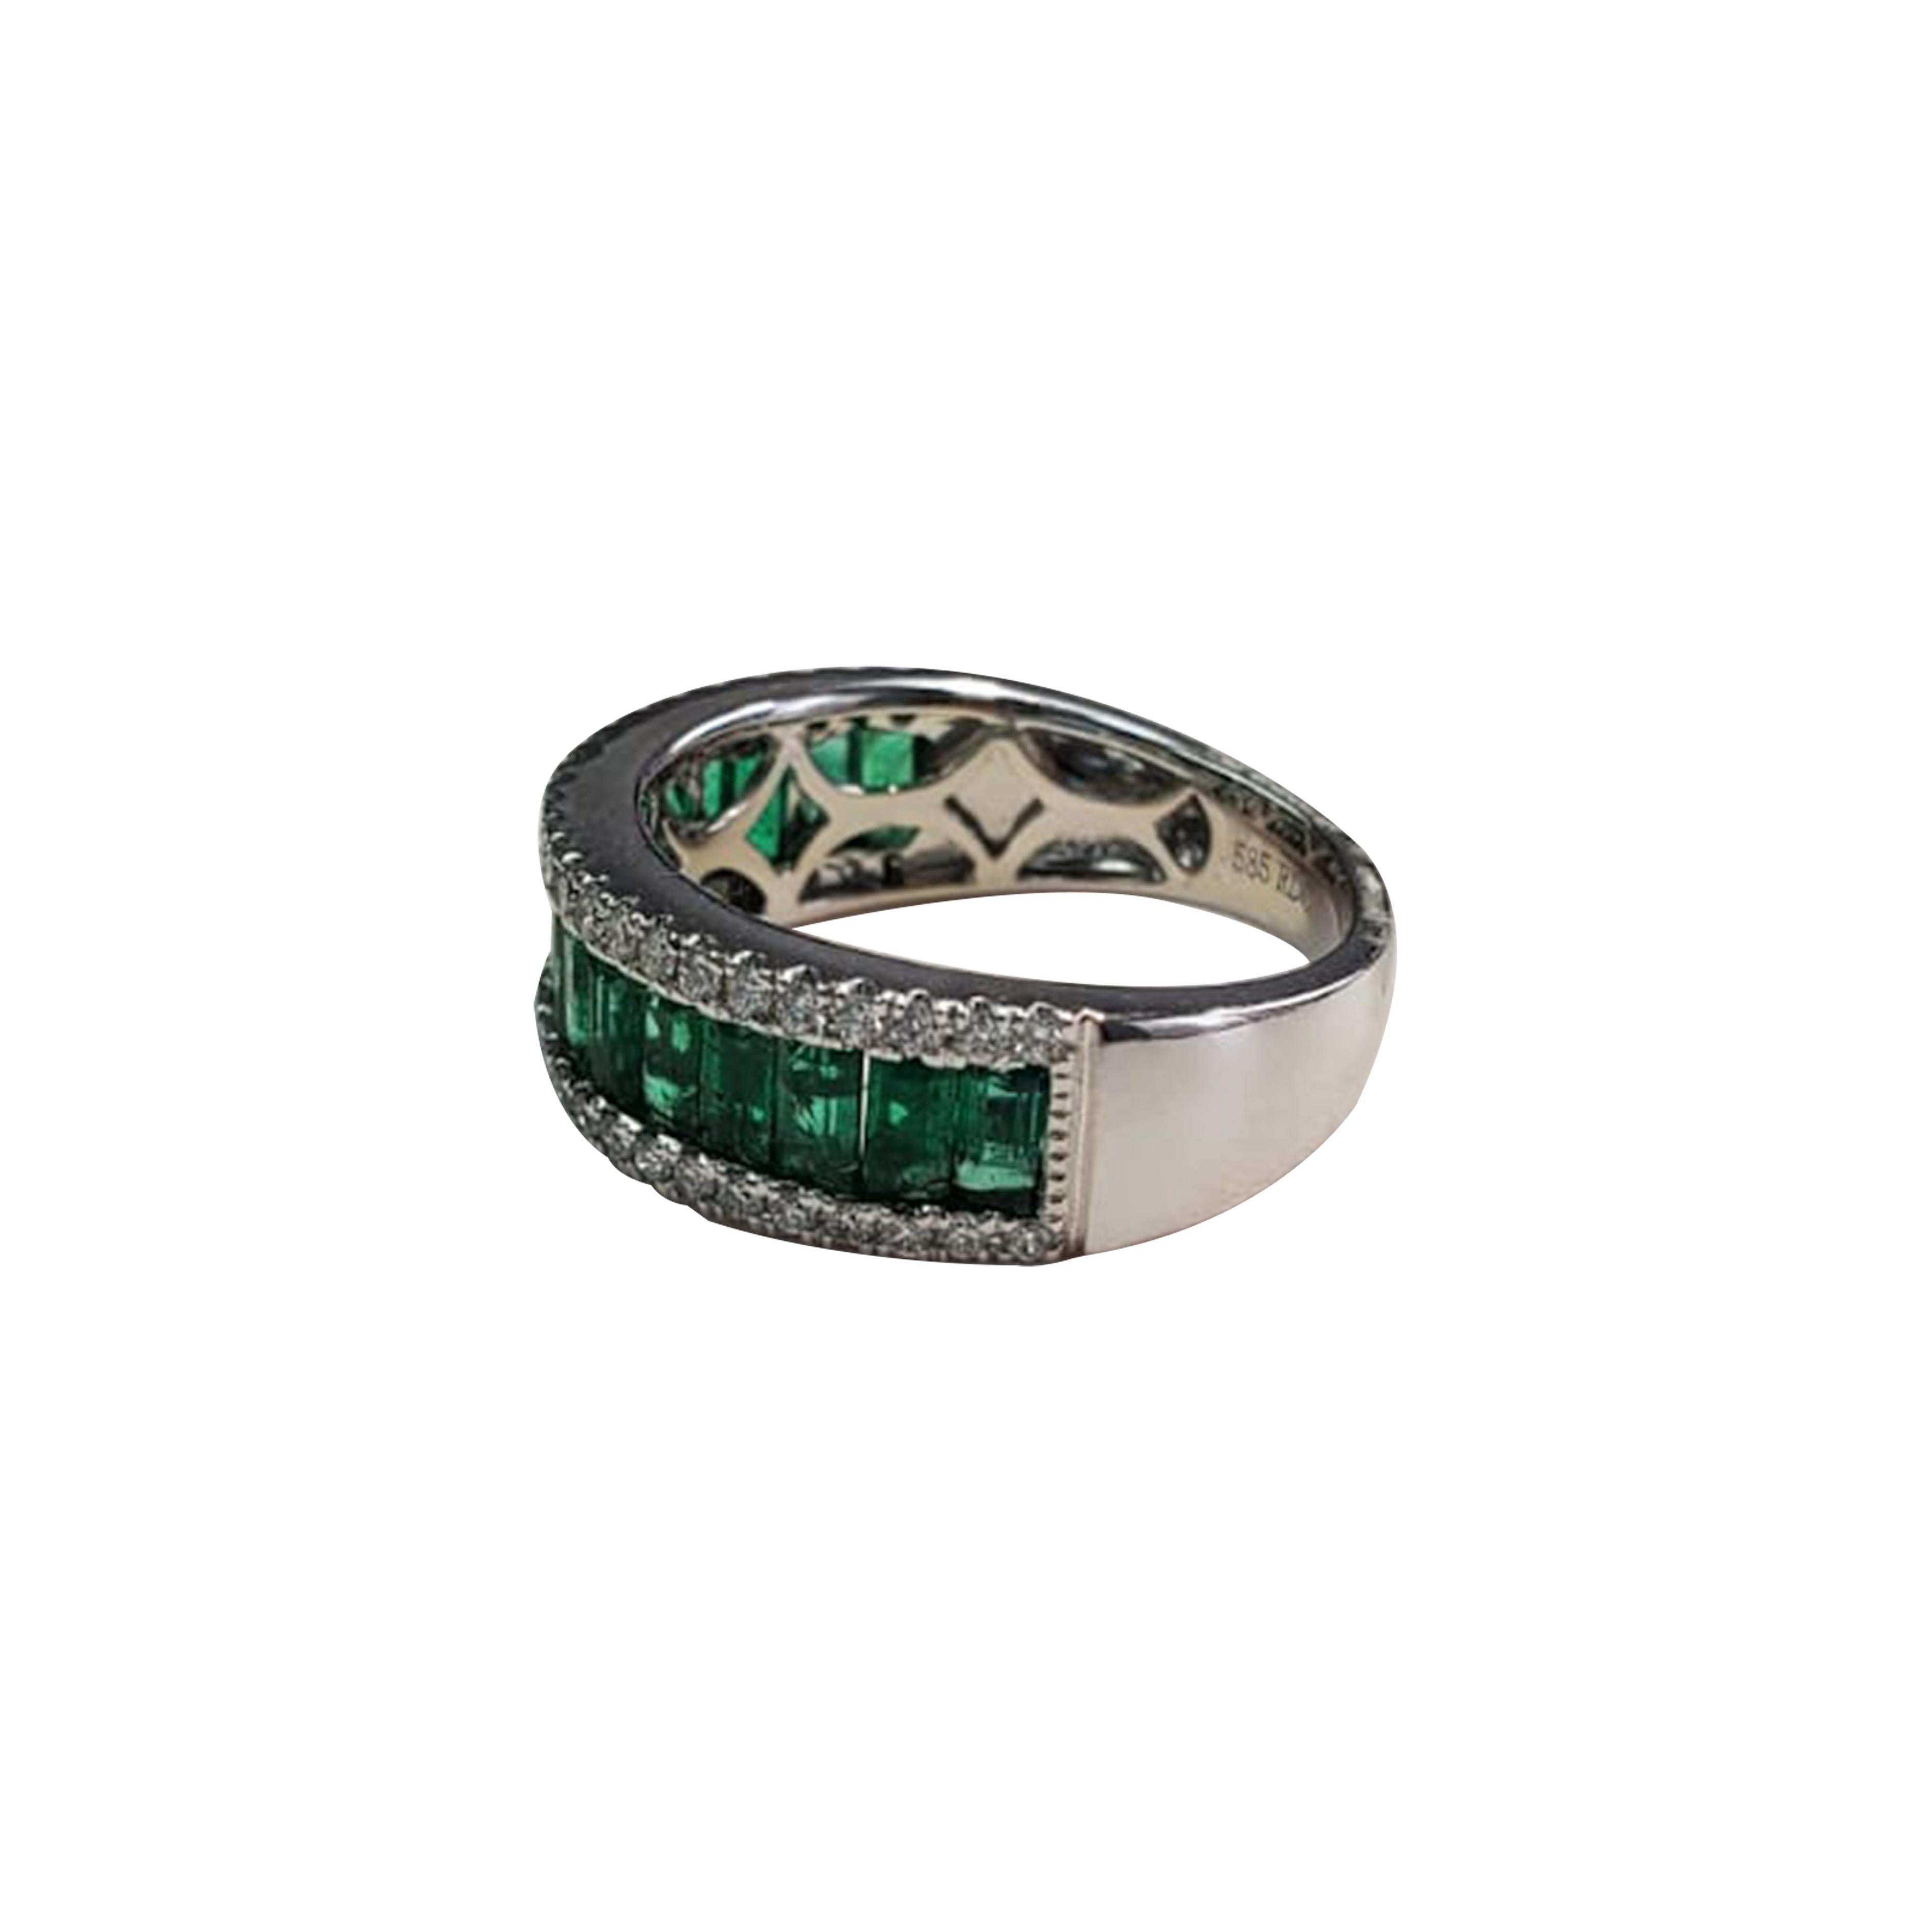 Emerald Cut emerald (1.85ct)

White diamond (.36ct)
